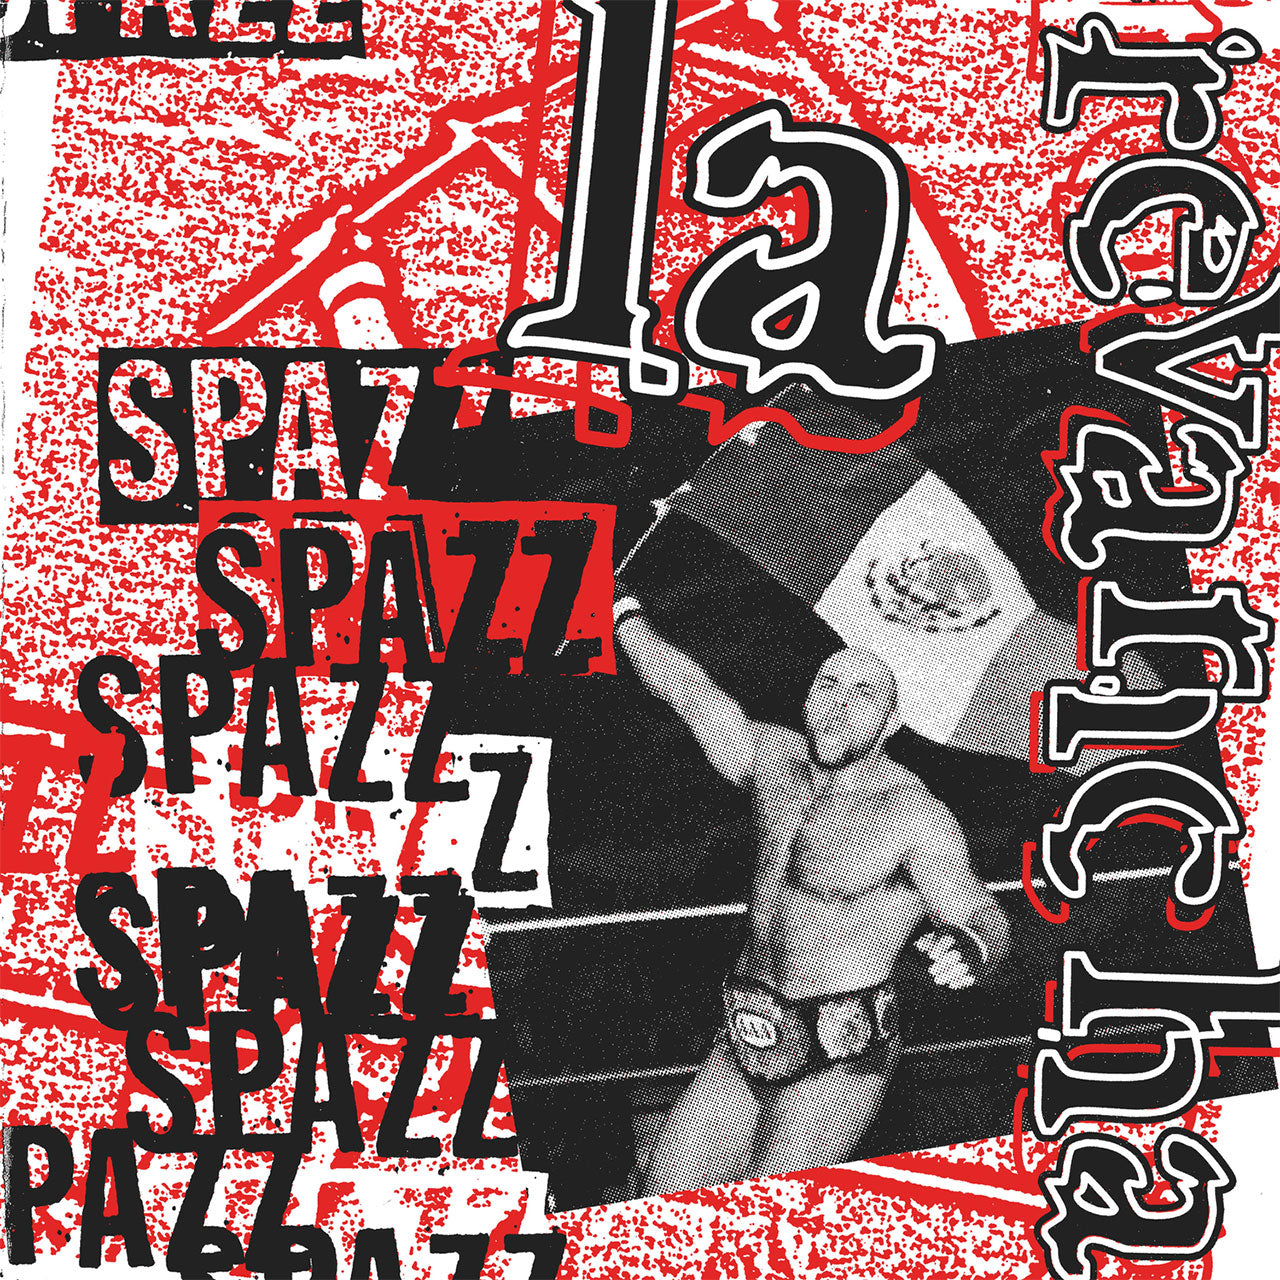 Spazz - La Revancha (2018 Reissue) (CD)